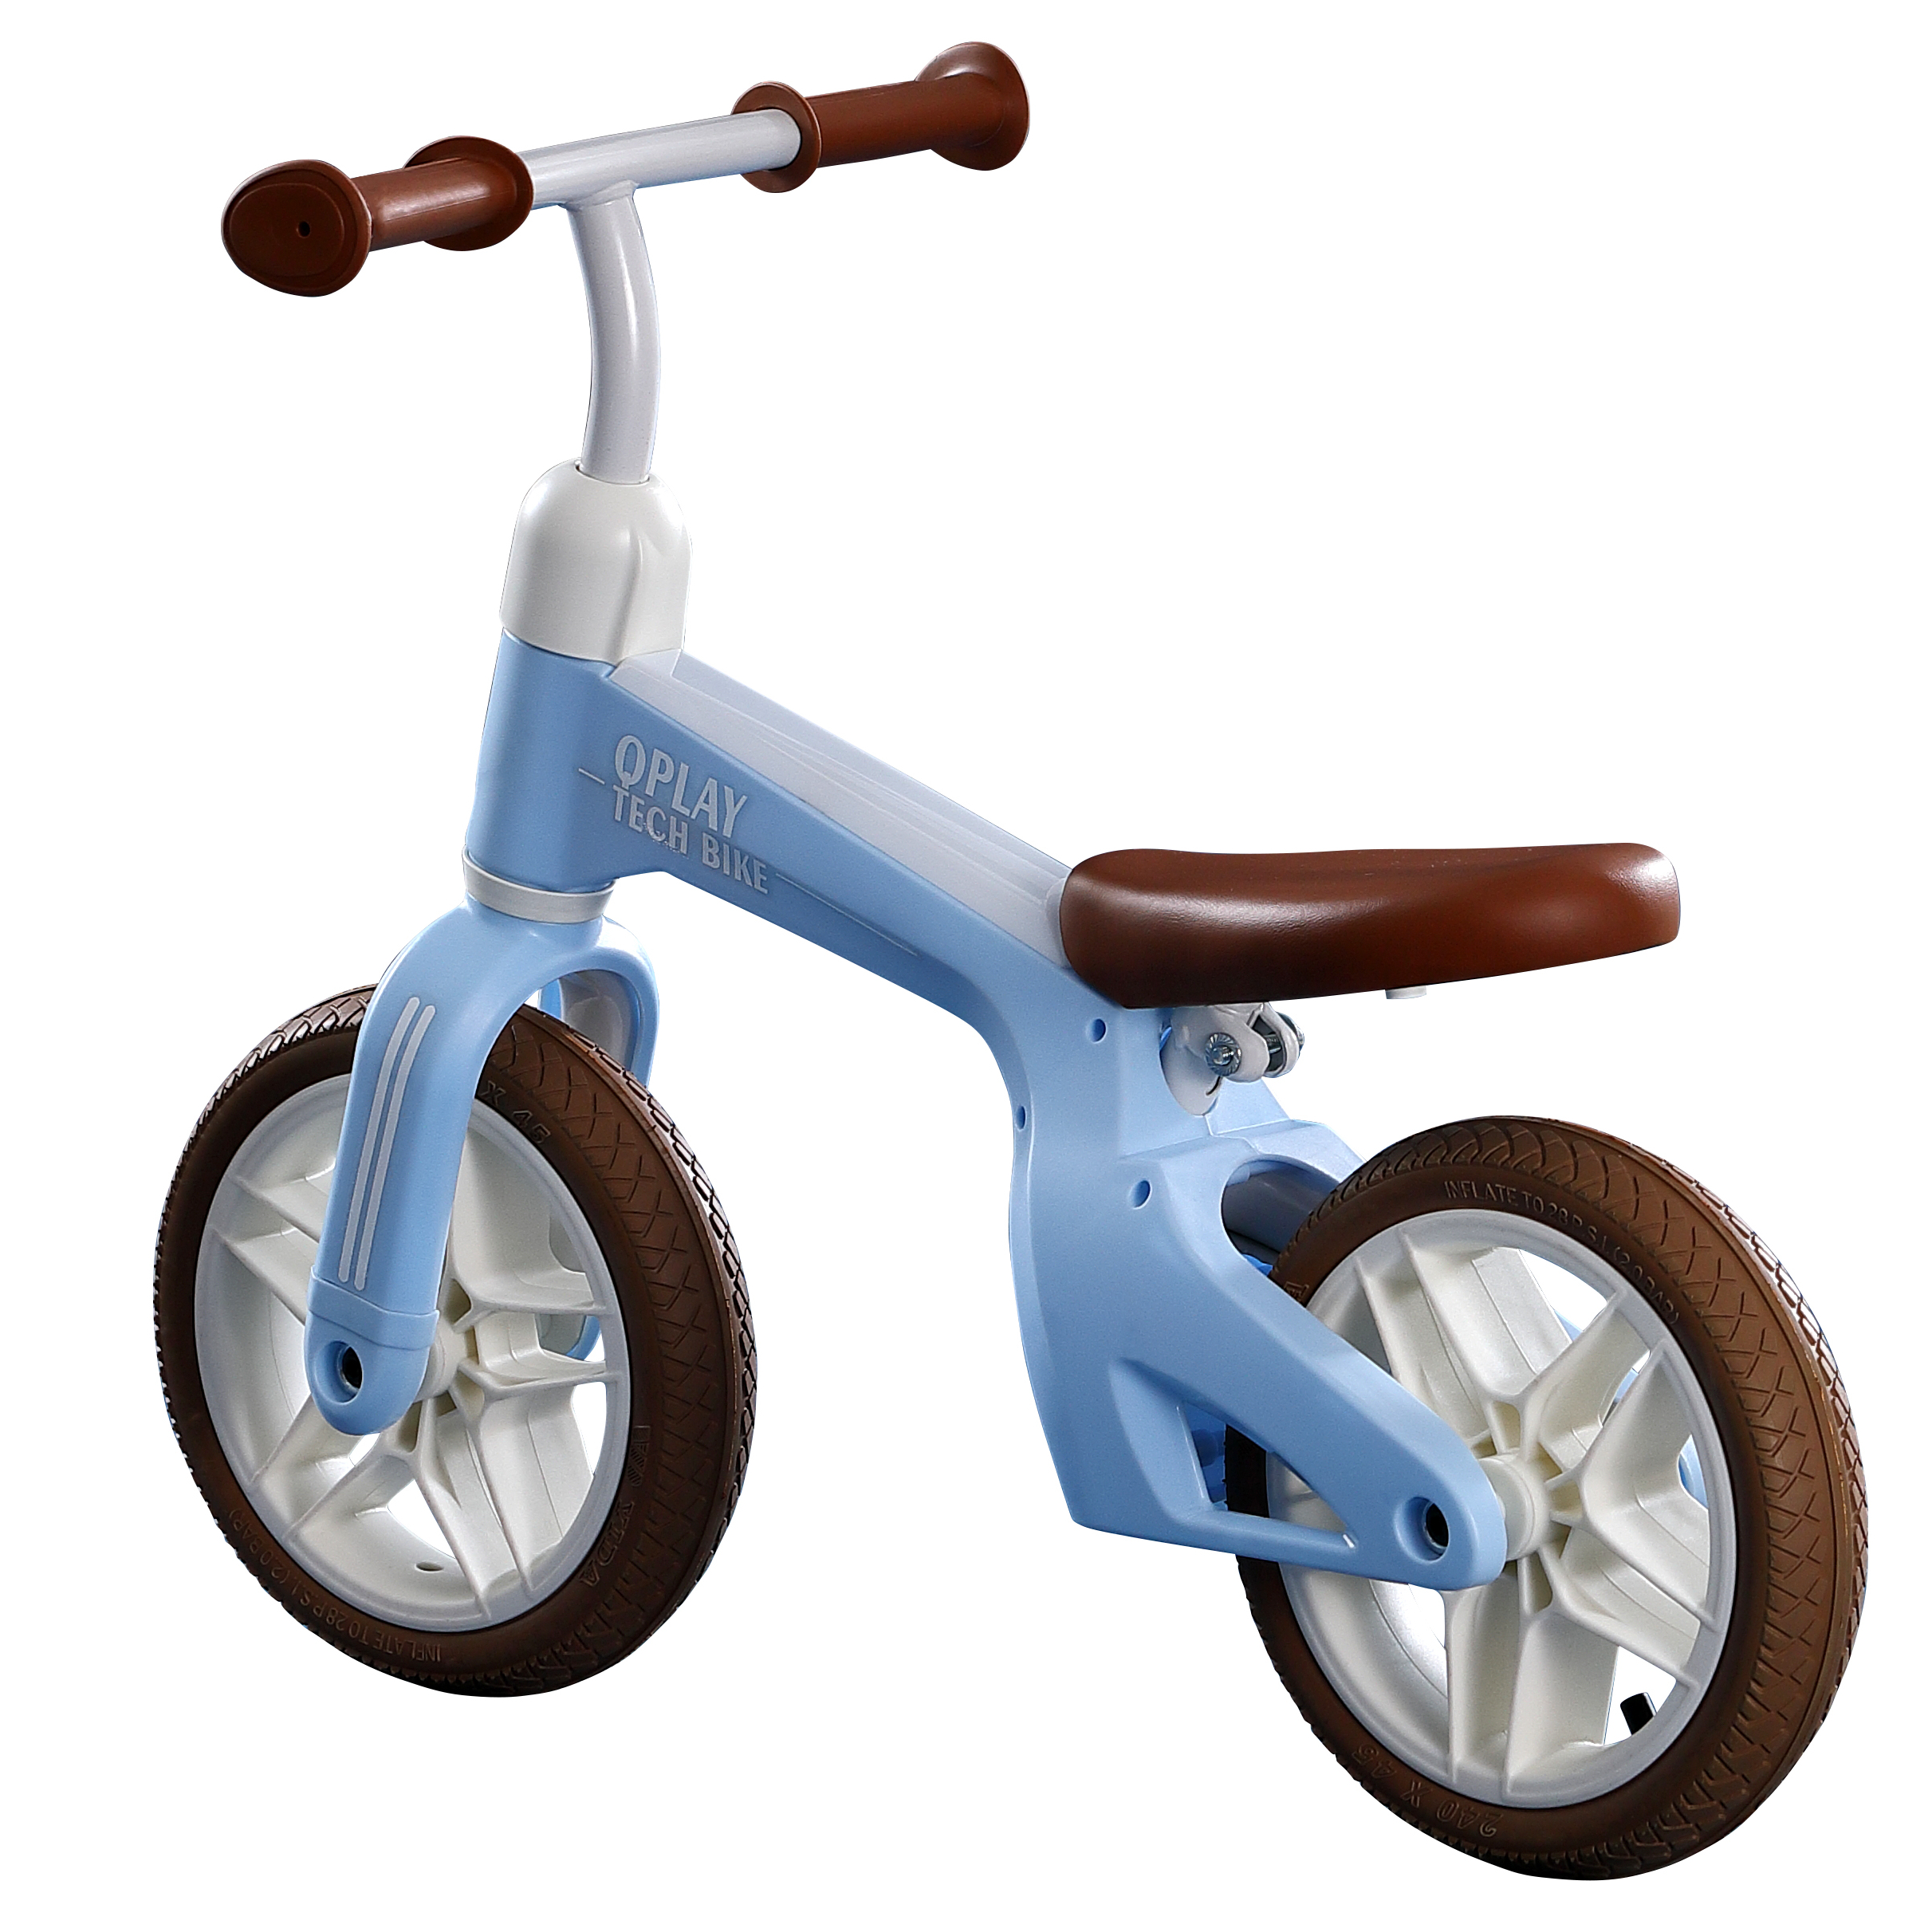 Біговел дитячий Qplay Tech Air, синій (QP-Bike-002Blue) - фото 1